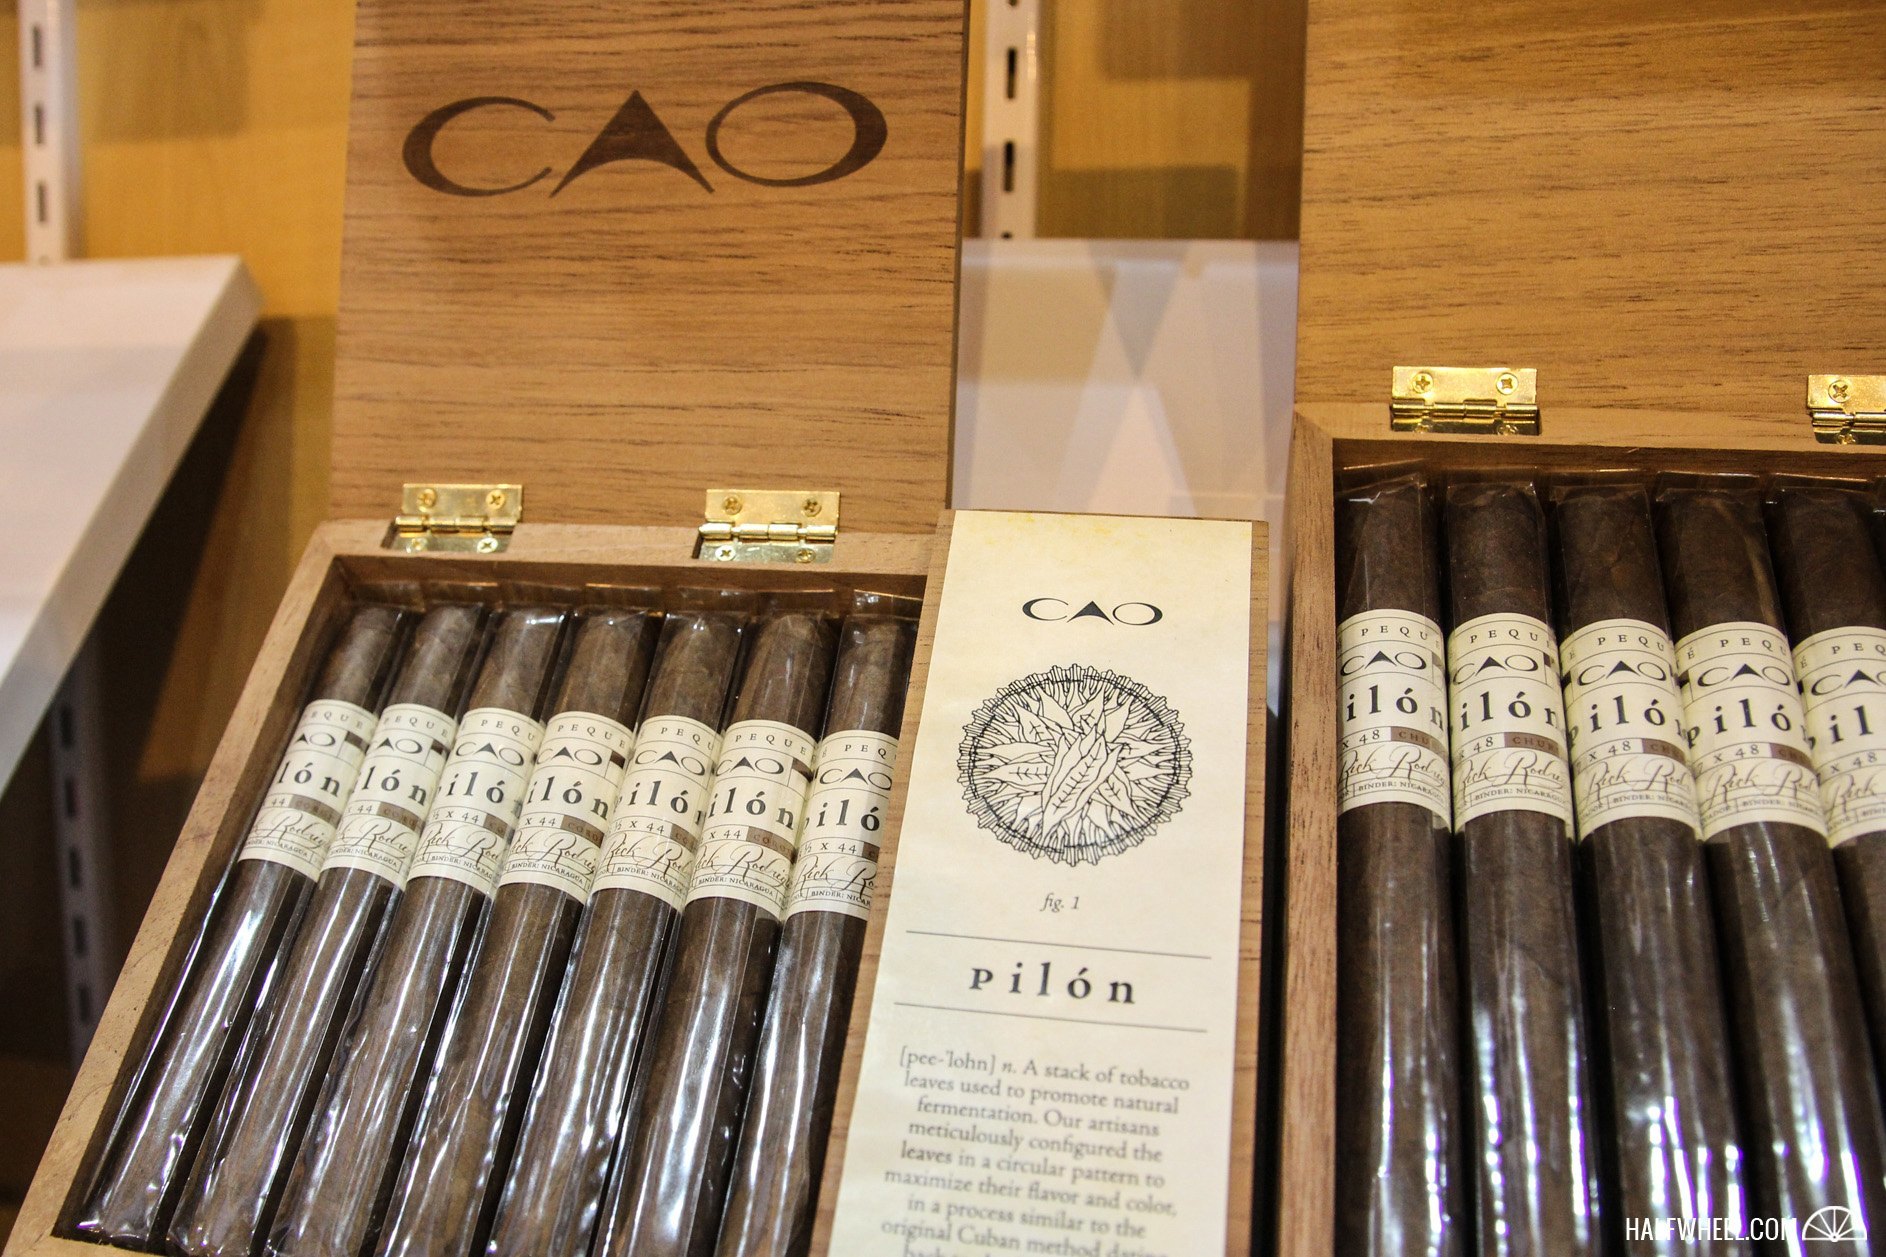 General Cigar Co CAO Pilon